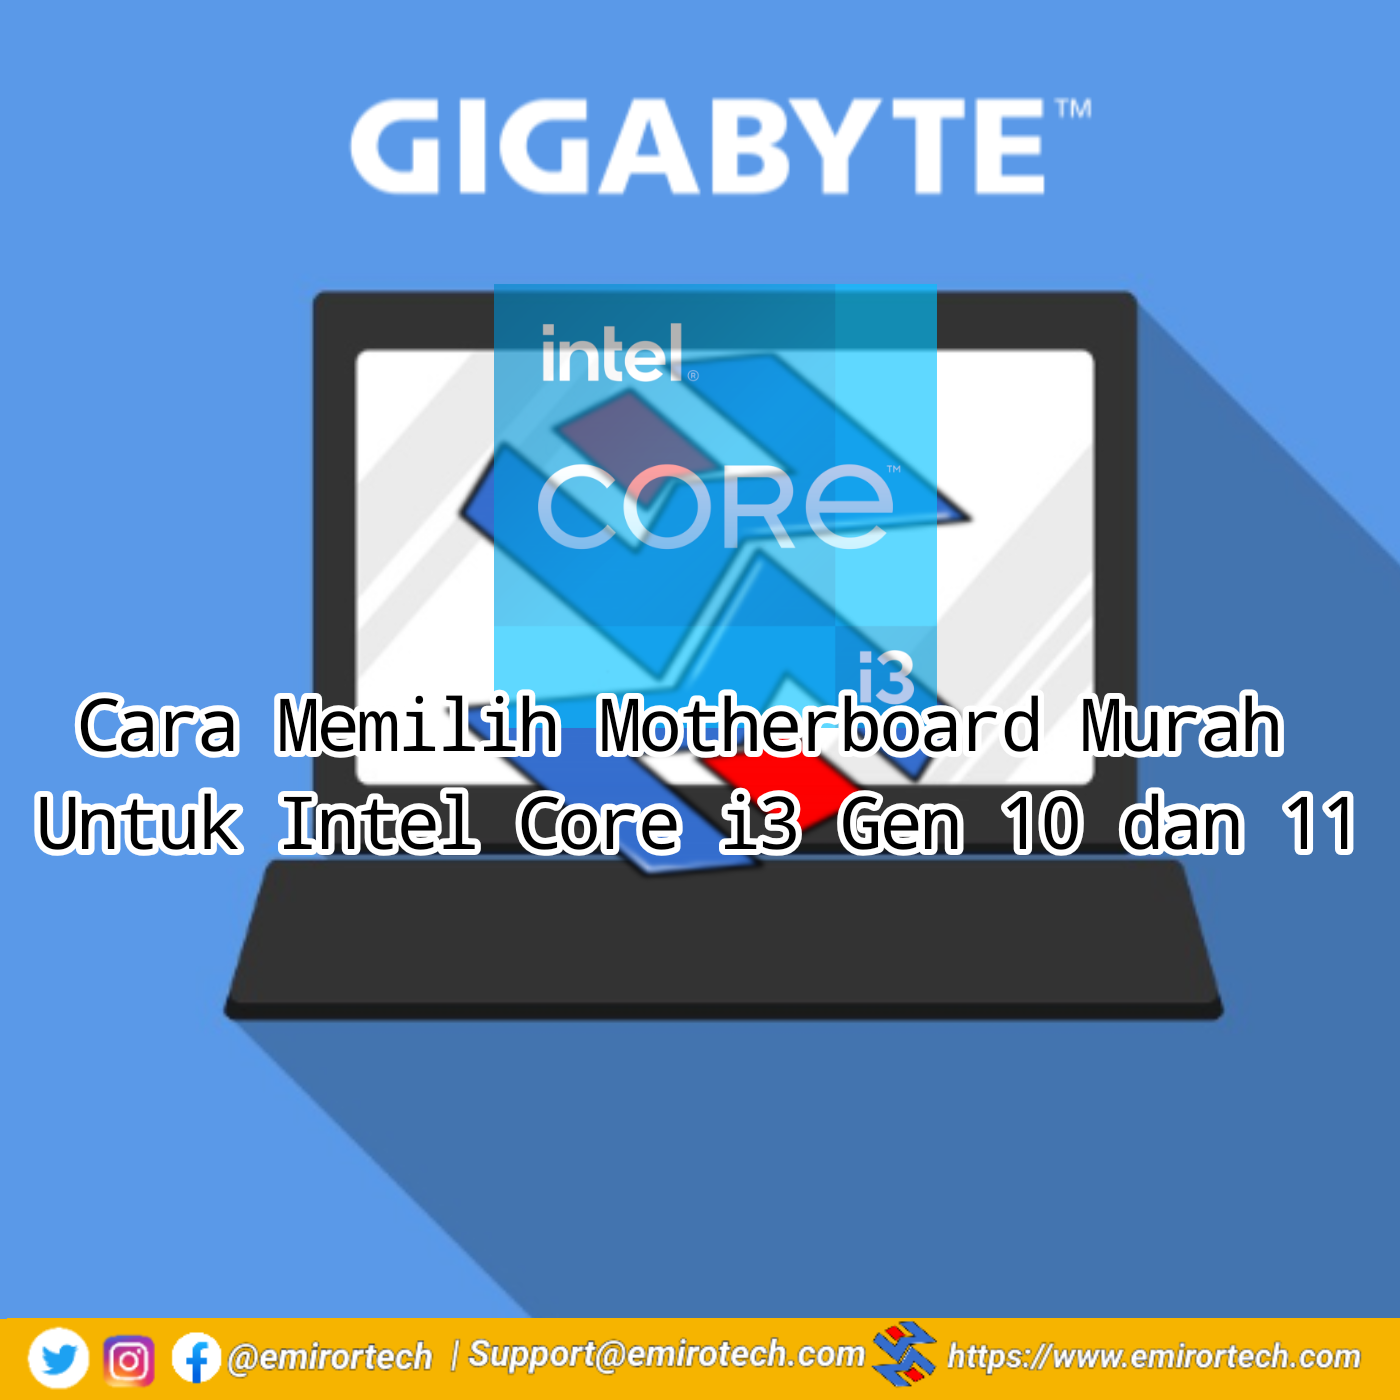 Cara Memilih Motherboard Murah Untuk Intel Core i3 Gen 10 dan 11